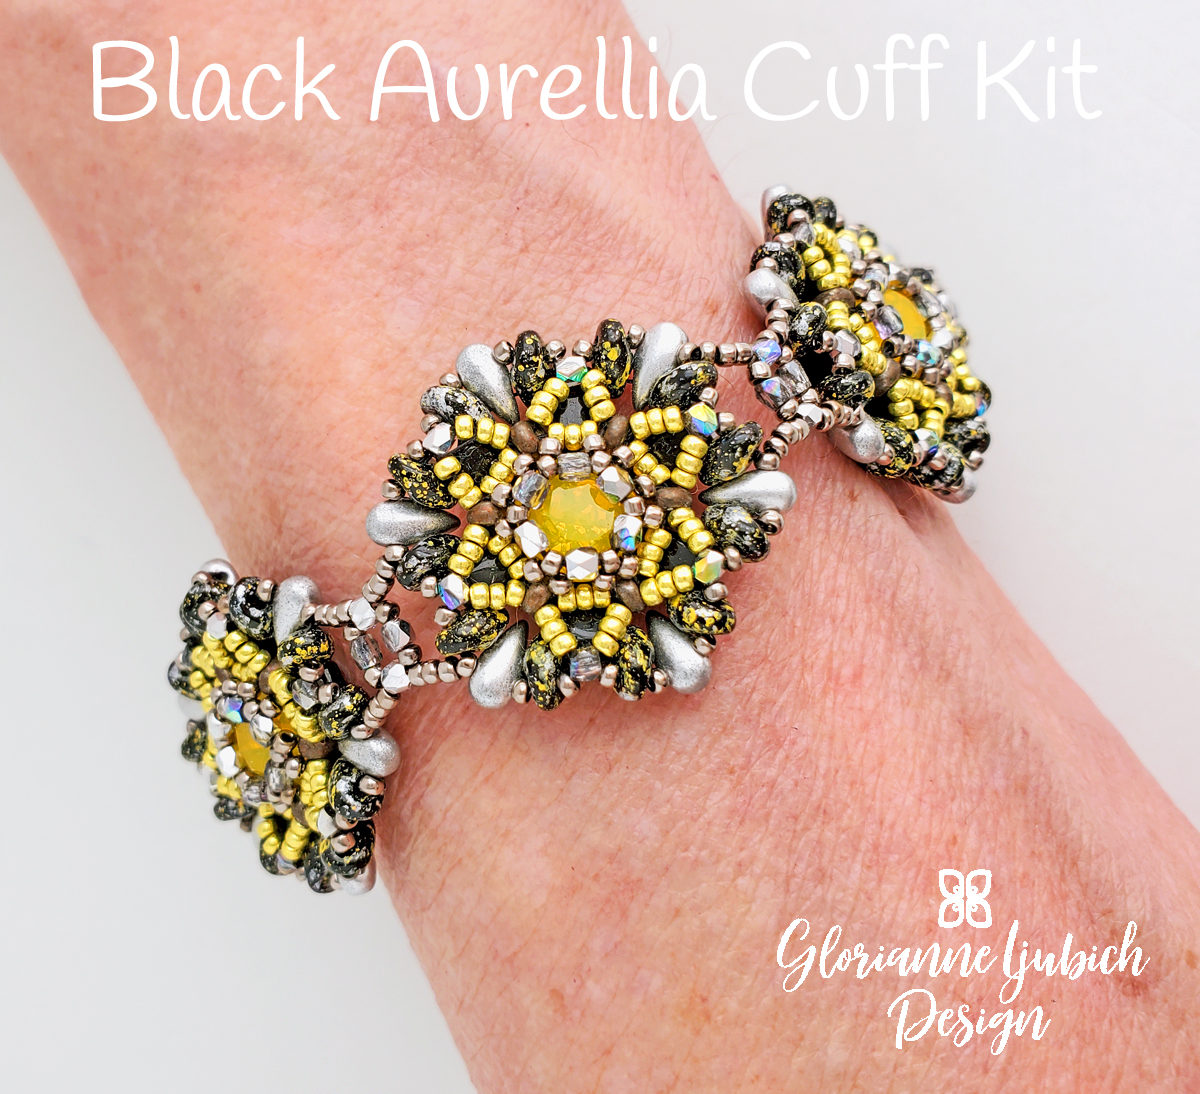 Aurellia Beadwork Bracelet Kit - Glorianne Ljubich Design